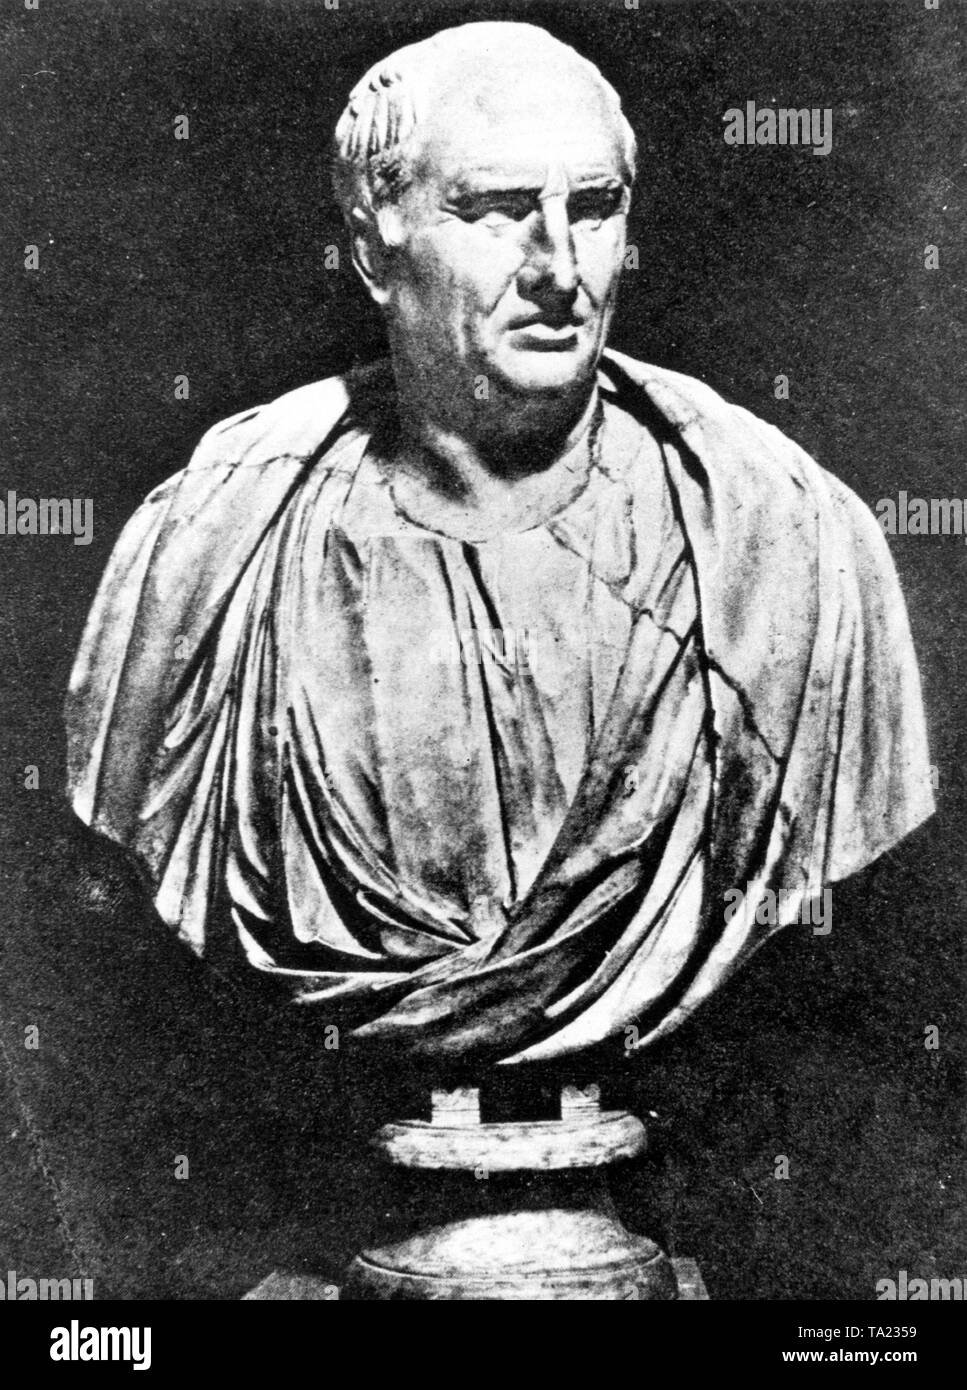 Marcus Tullius Cicero, Roman politician, orator and philosopher. Stock Photo